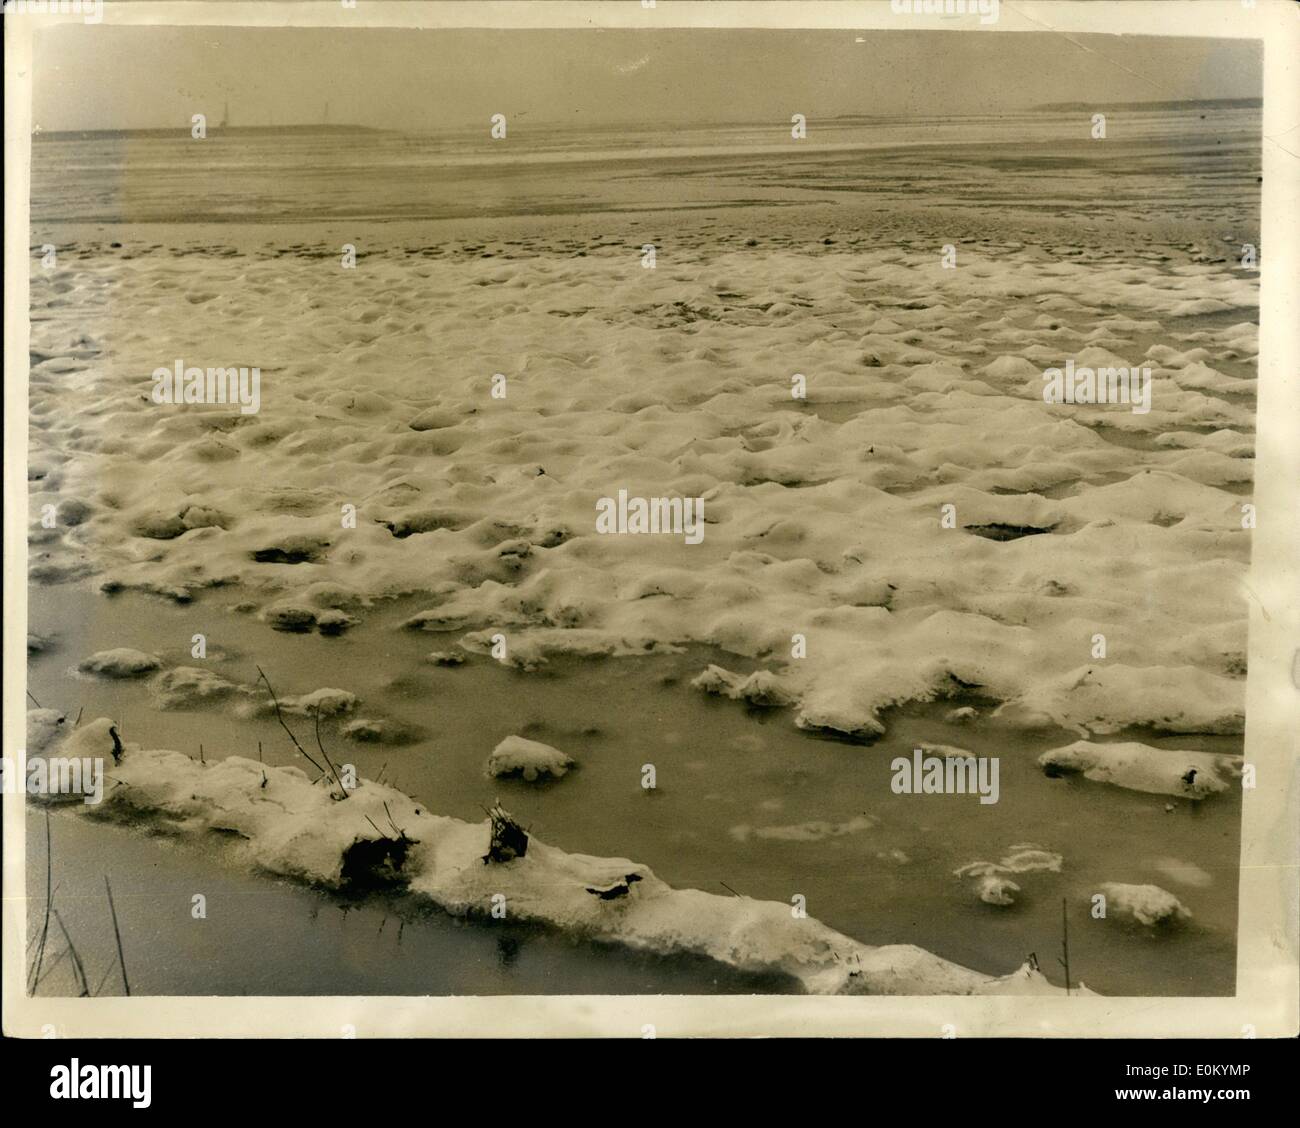 2. Februar 1953 - drehen Hochwasser auf Ice Verwüstung in den Niederlanden Flut Regionen. Foto zeigt eine allgemeine Auffassung hinsichtlich der Schelde Niederlande - als die Fluten, die einen weiten Bereich abdecken - Eis ab. Es wird geschätzt, dass Todesrolle in den Niederlanden Fluten in den Regionen von 2.000 ist. Stockfoto